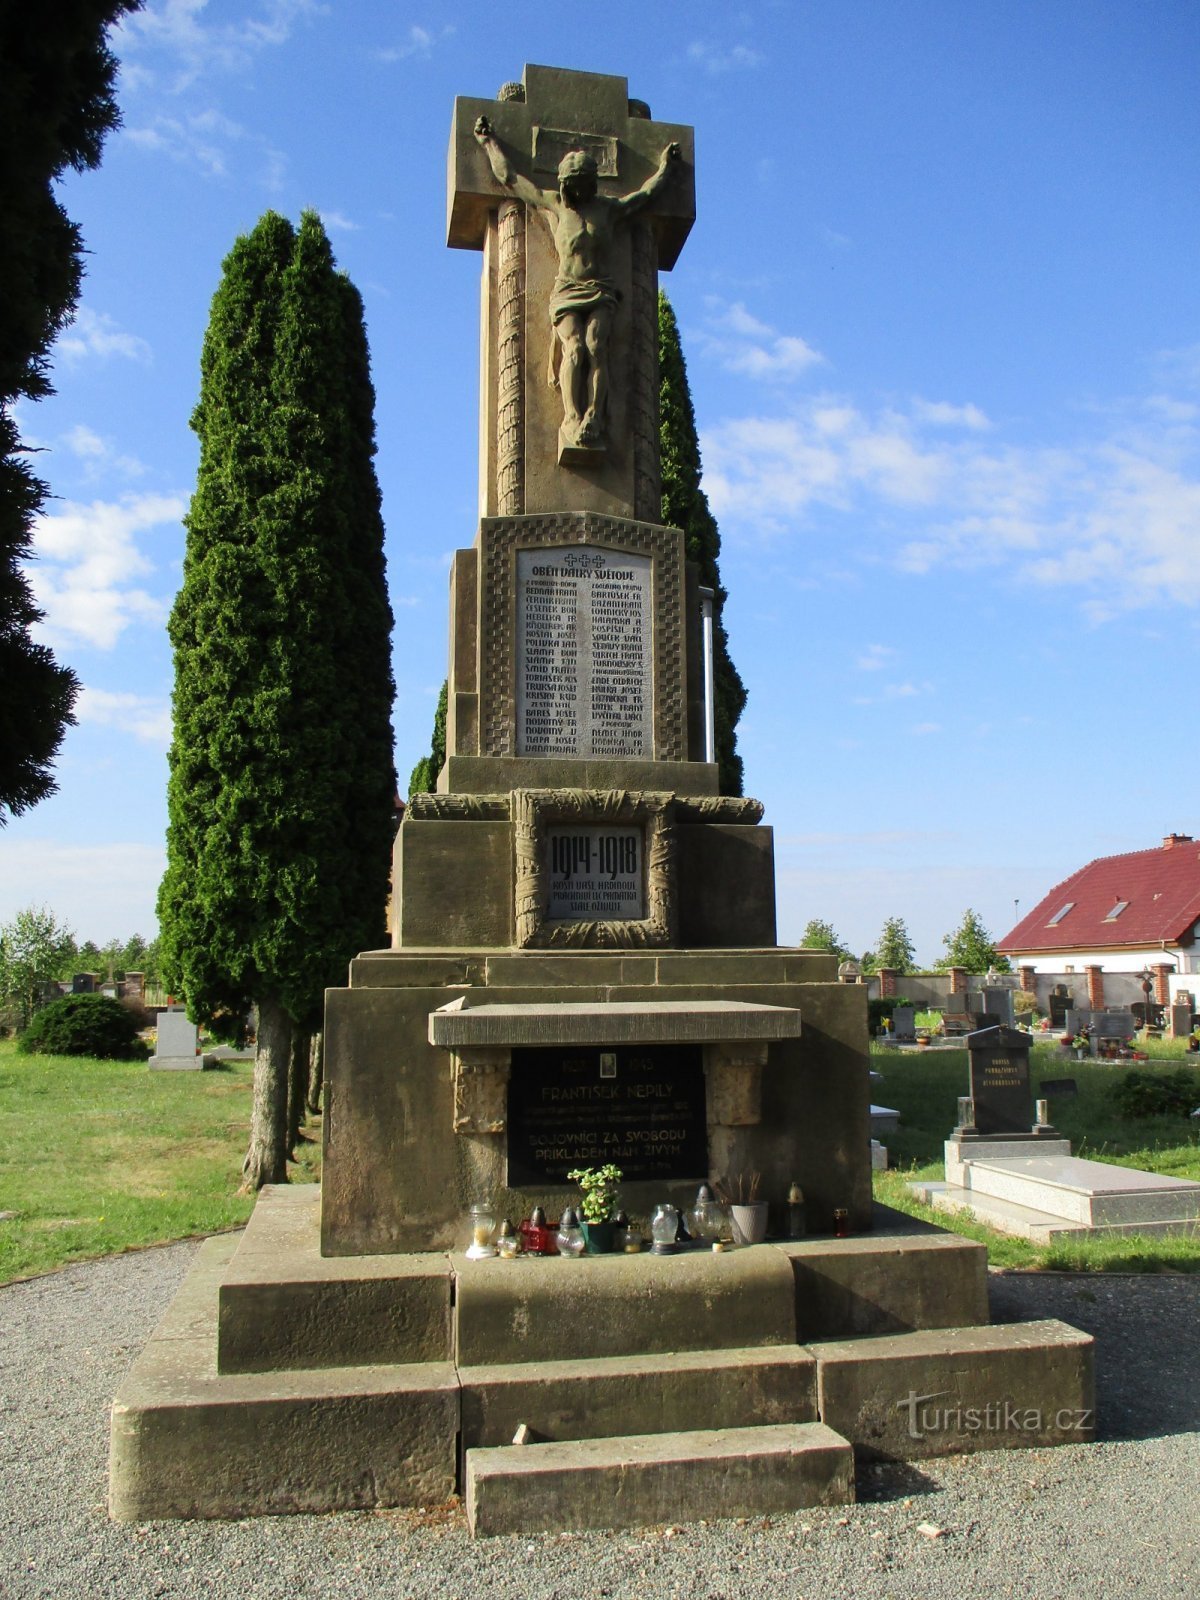 第一次世界大戦で亡くなった人々の記念碑 (Probluz)